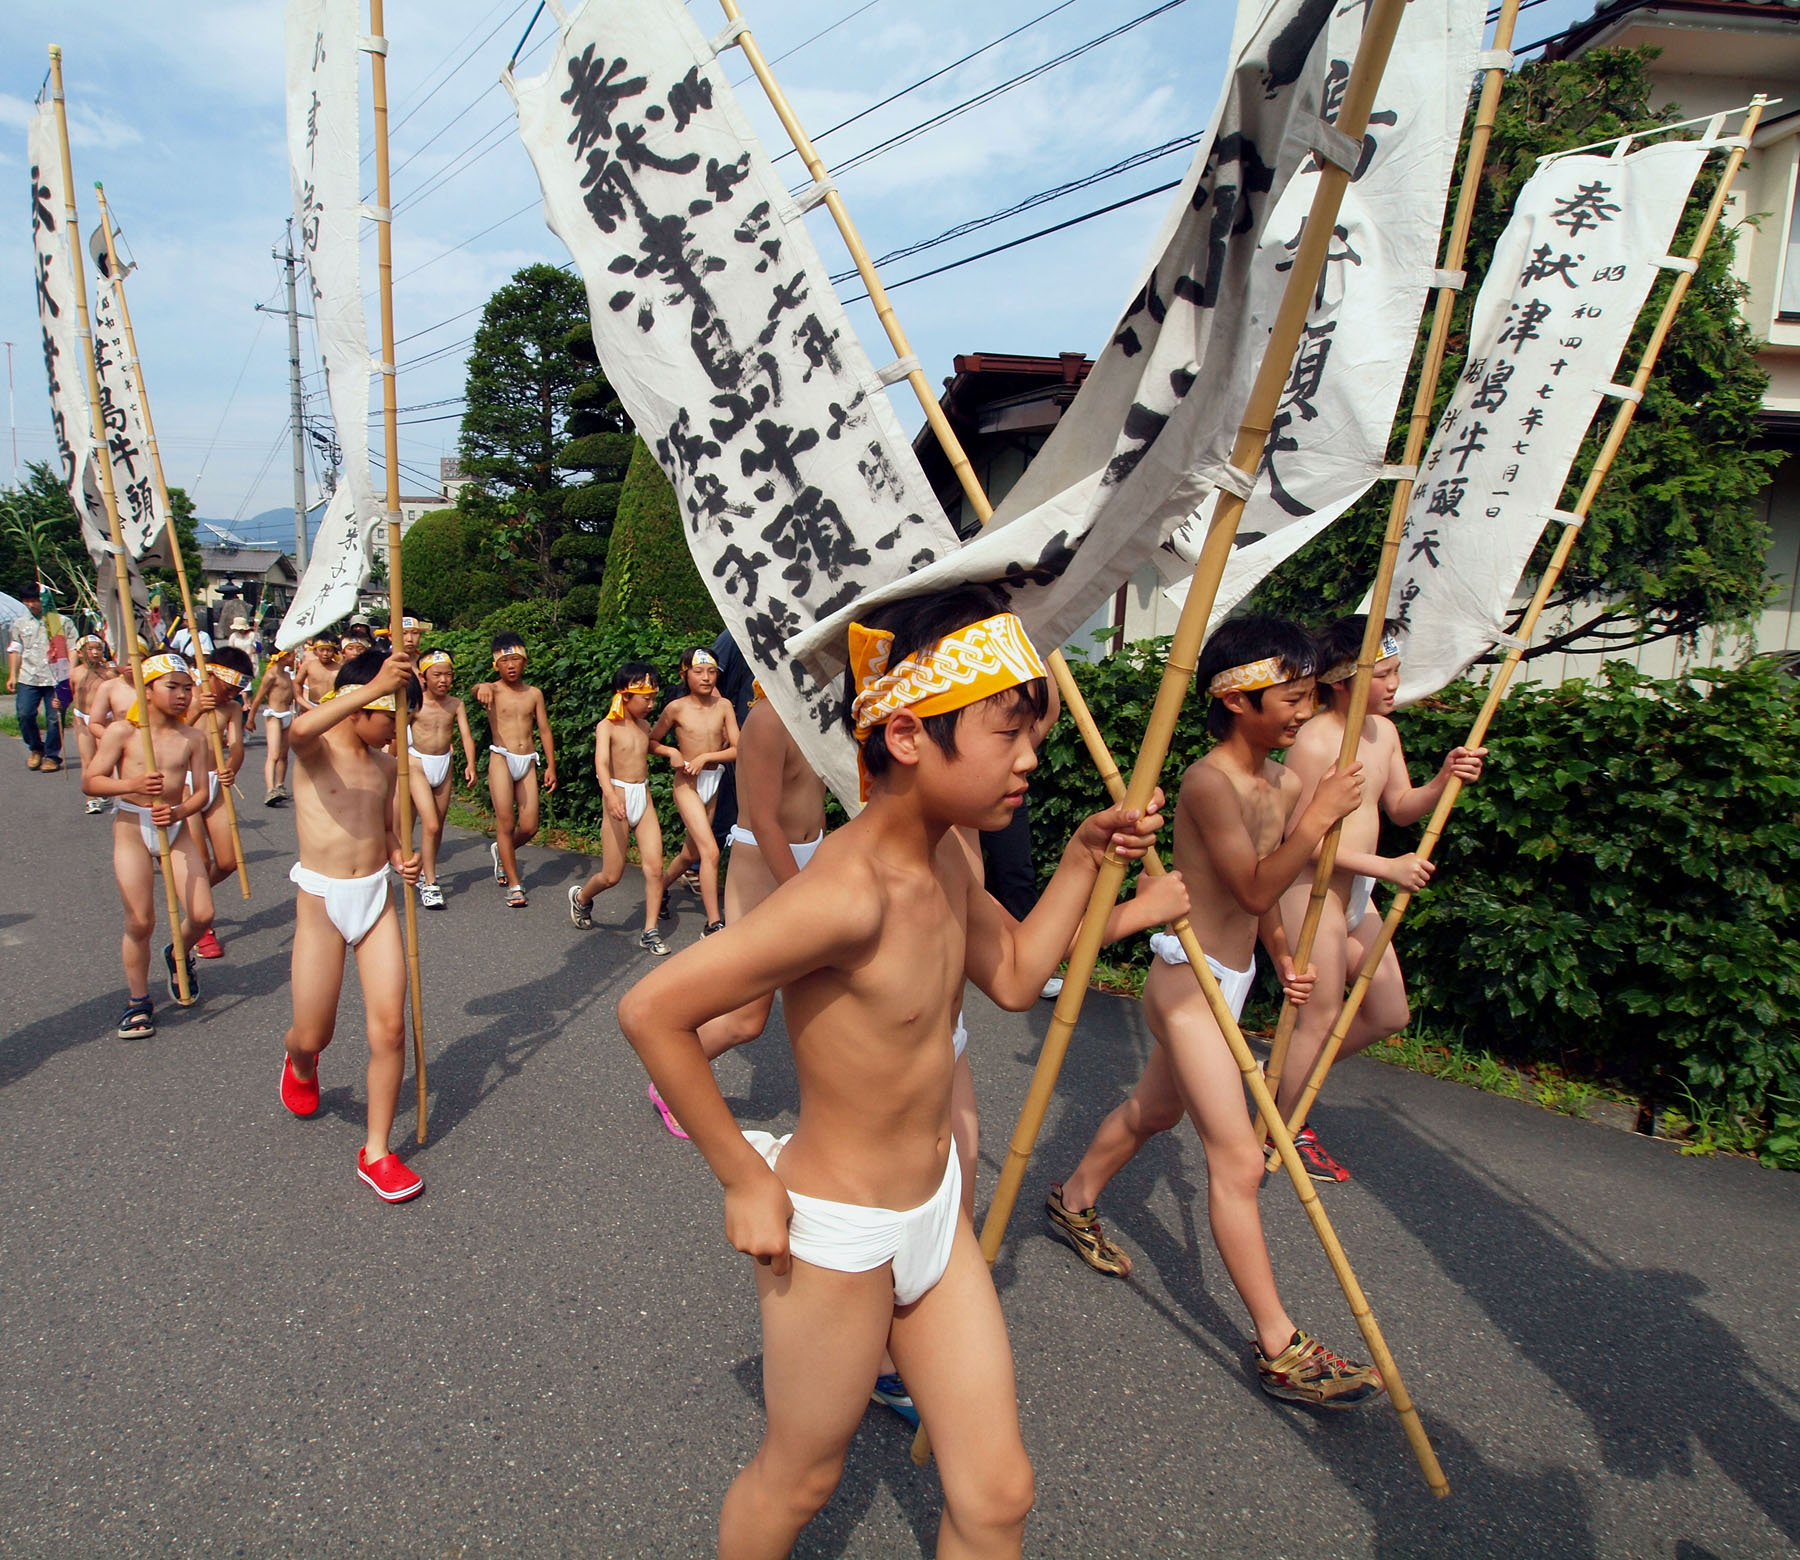 祭り 裸 昔は男性が全裸になる祭りがあり、見学者の女性は男性のモノの品評をし